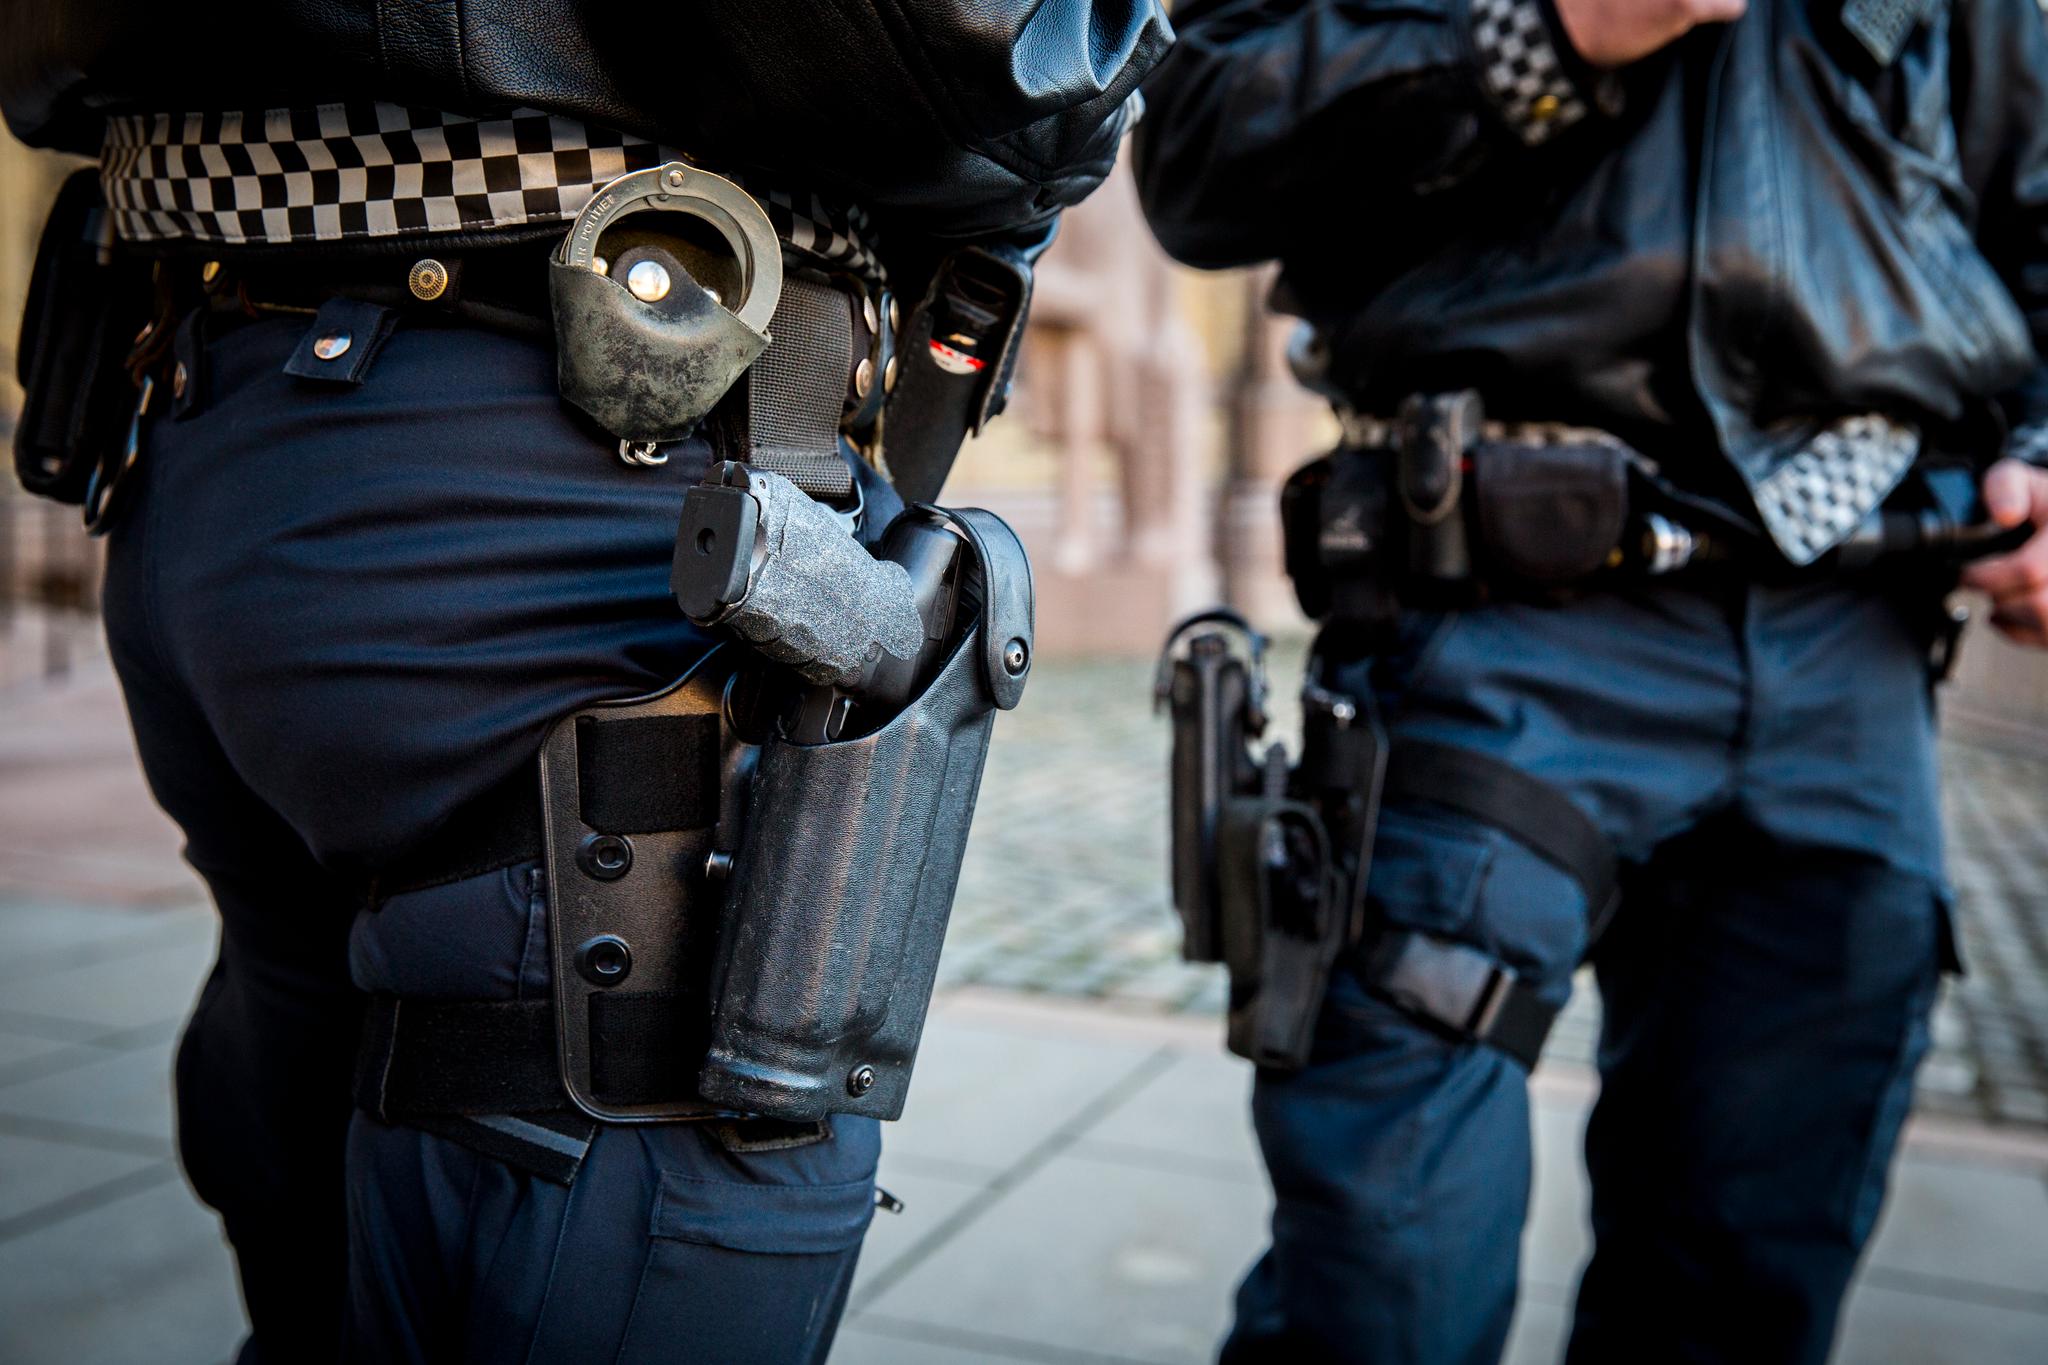 Slik ser det ut når norsk politi bærer sitt standardvåpen, pistol.